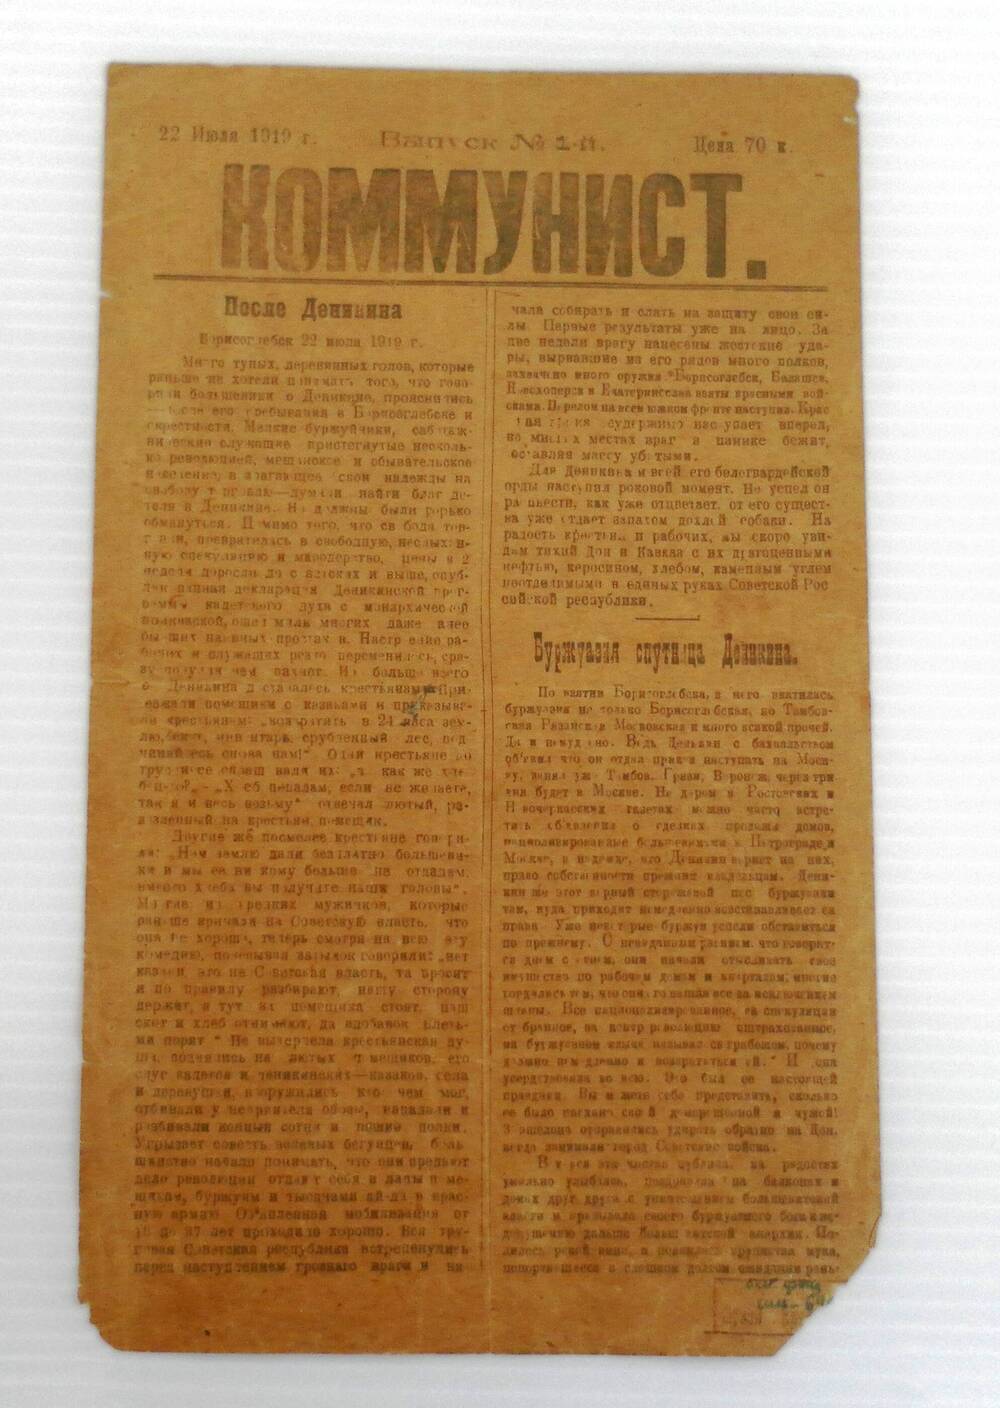 Газета Коммунист. 22 июля 1919 года. Выпуск № 1-й.